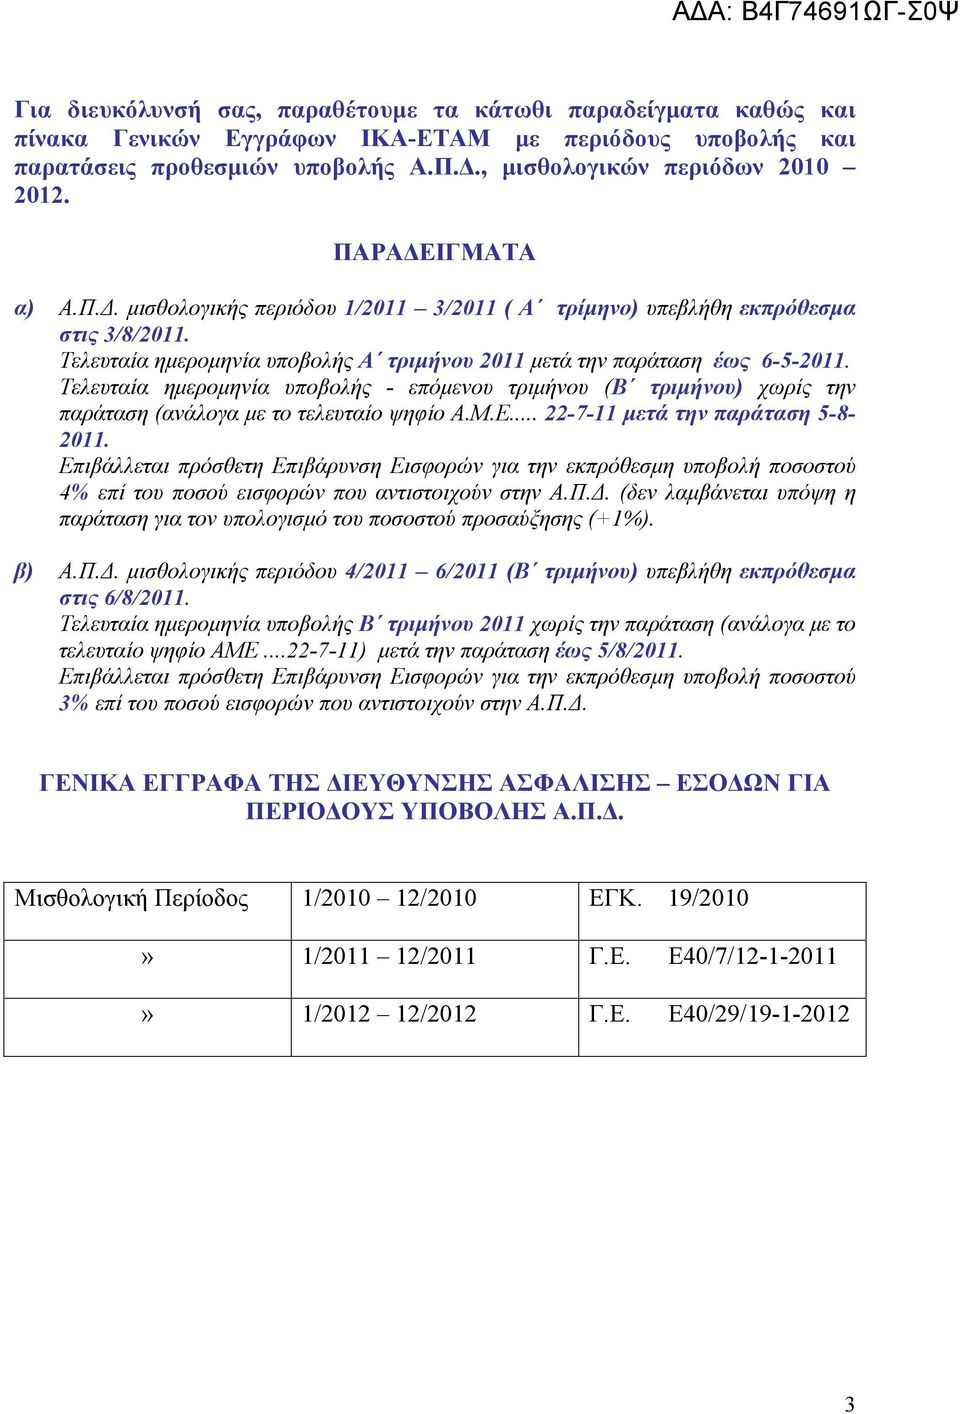 Τελευταία ημερομηνία υποβολής - επόμενου τριμήνου (Β τριμήνου) χωρίς την παράταση (ανάλογα με το τελευταίο ψηφίο Α.Μ.Ε... 22-7-11 μετά την παράταση 5-8- 2011.